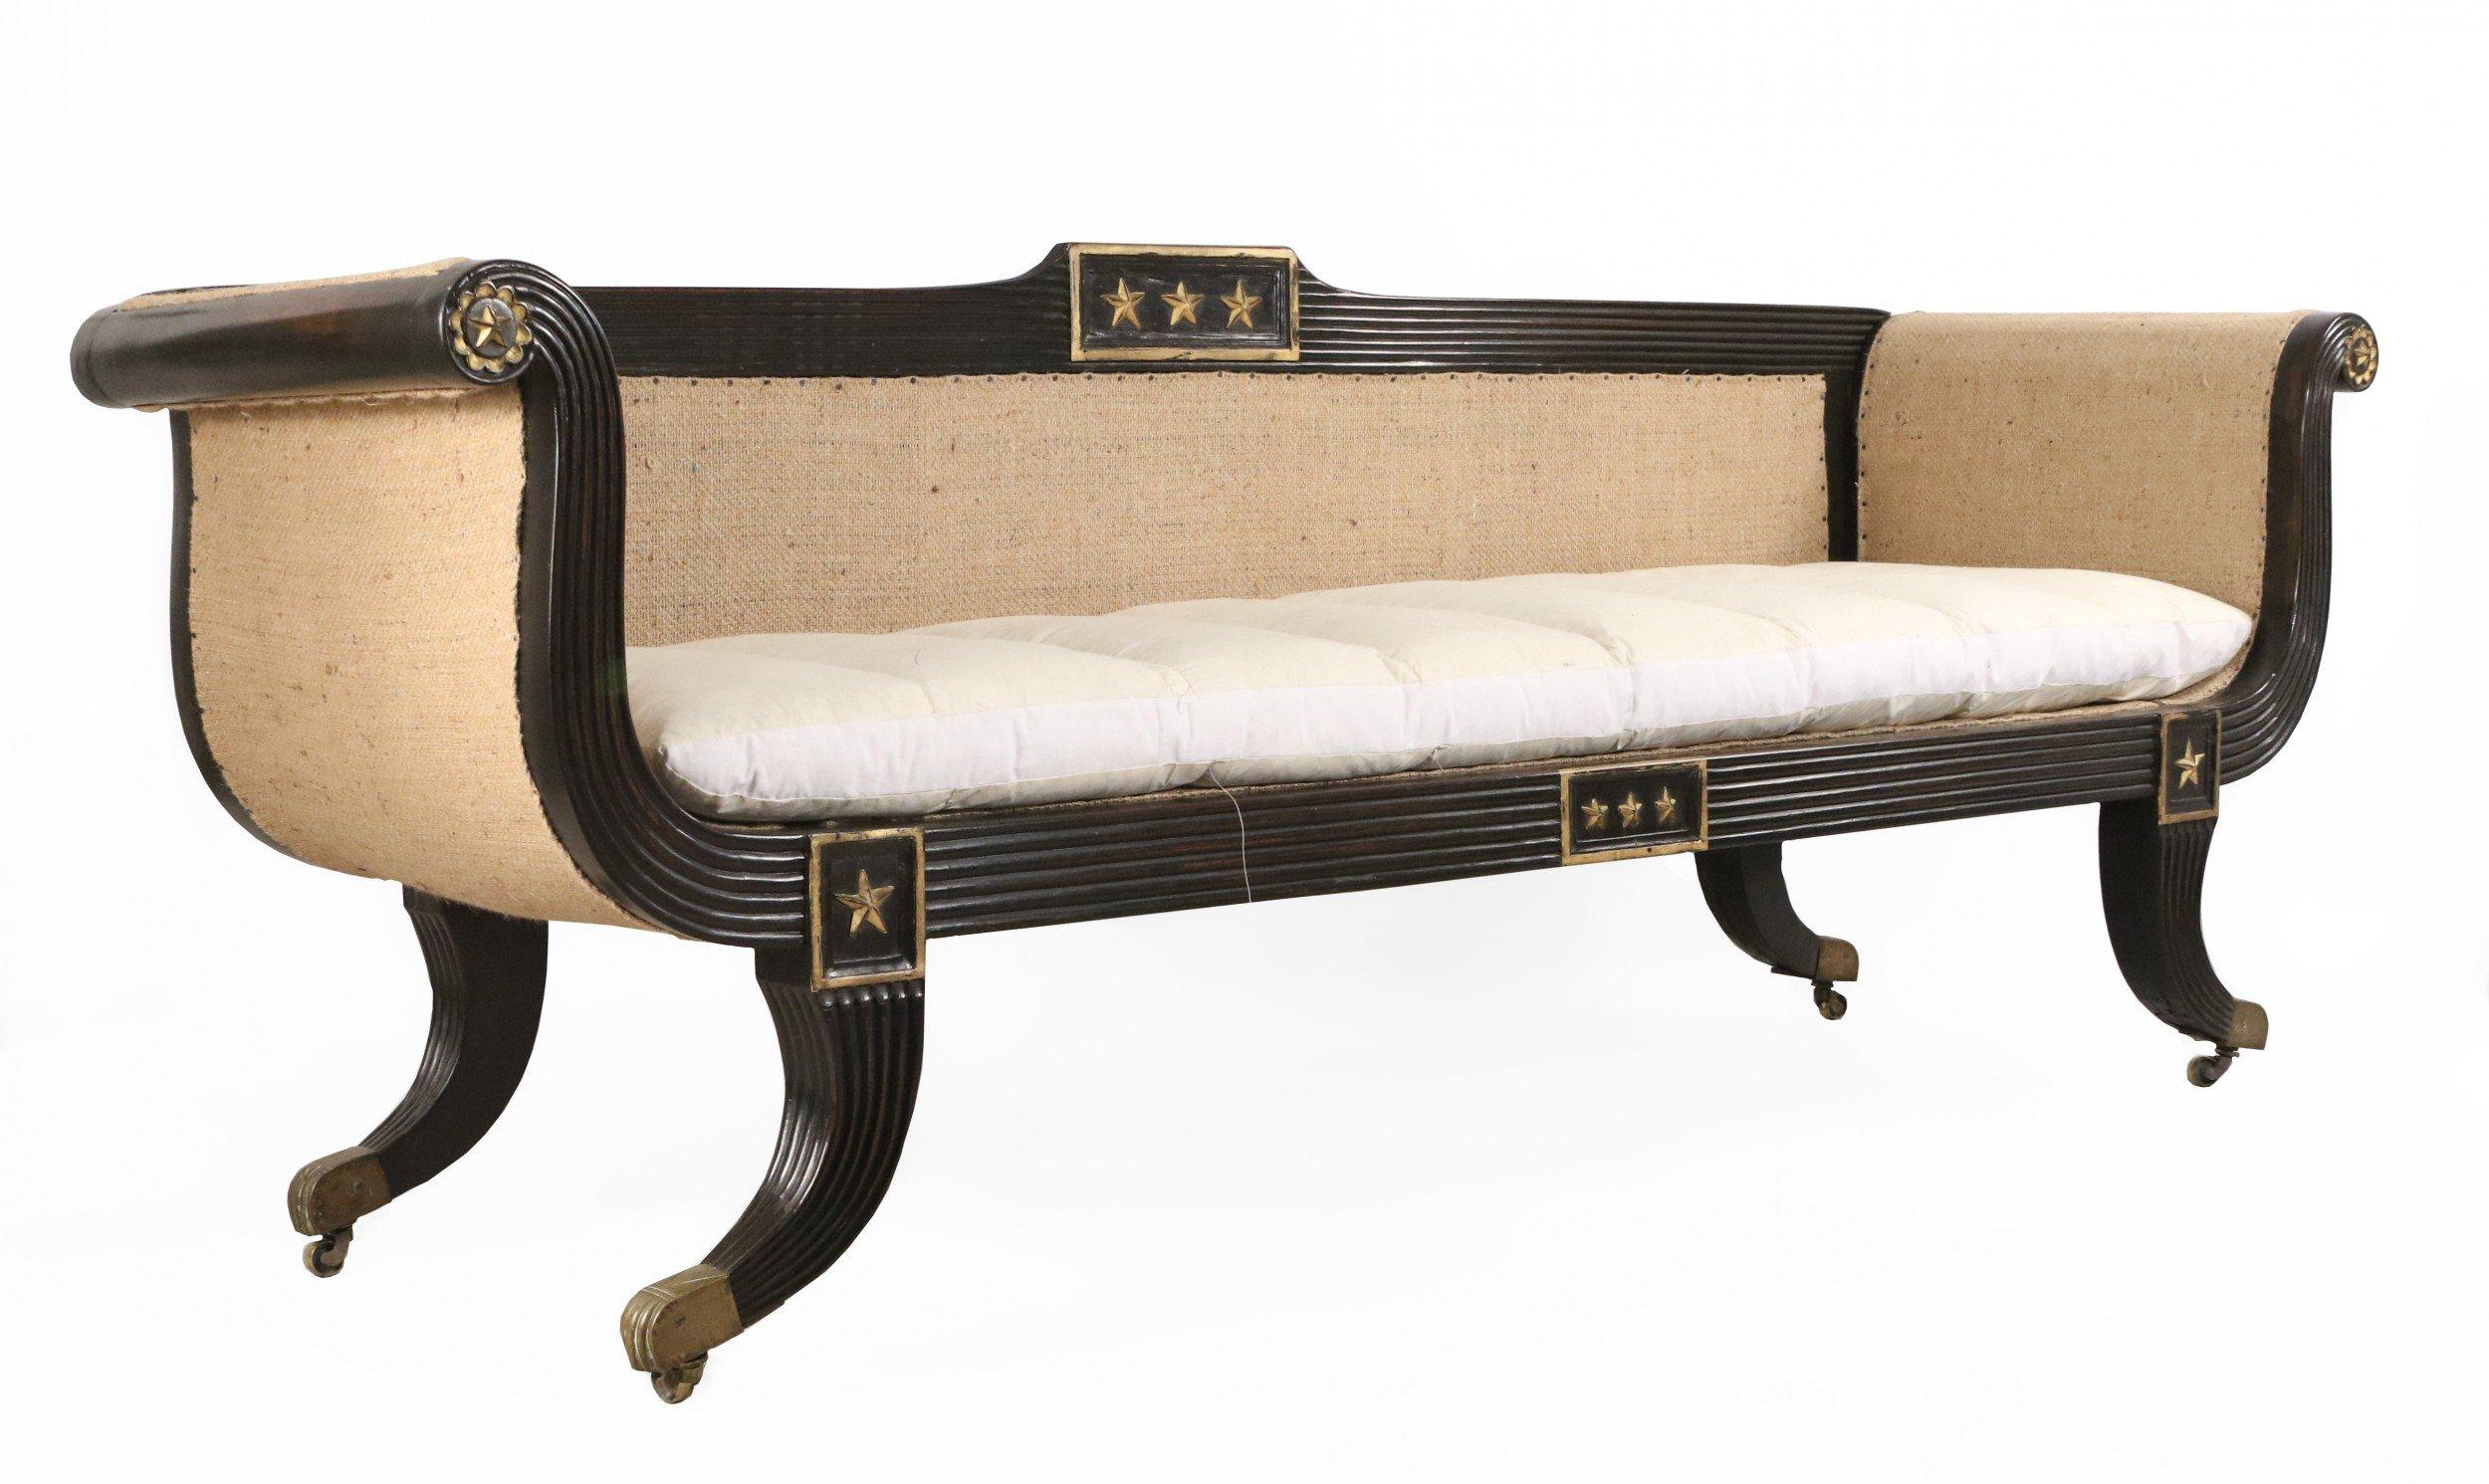 Englisches Regency-Sofa mit ebonisiertem und geriffeltem Rahmen, 3 Sitze mit vergoldeten Verzierungen und unbearbeiteten, gepolsterten Seiten und Rücken mit einem losen, baumwollbezogenen Kissen, das auf Messingrollen ruht.
 